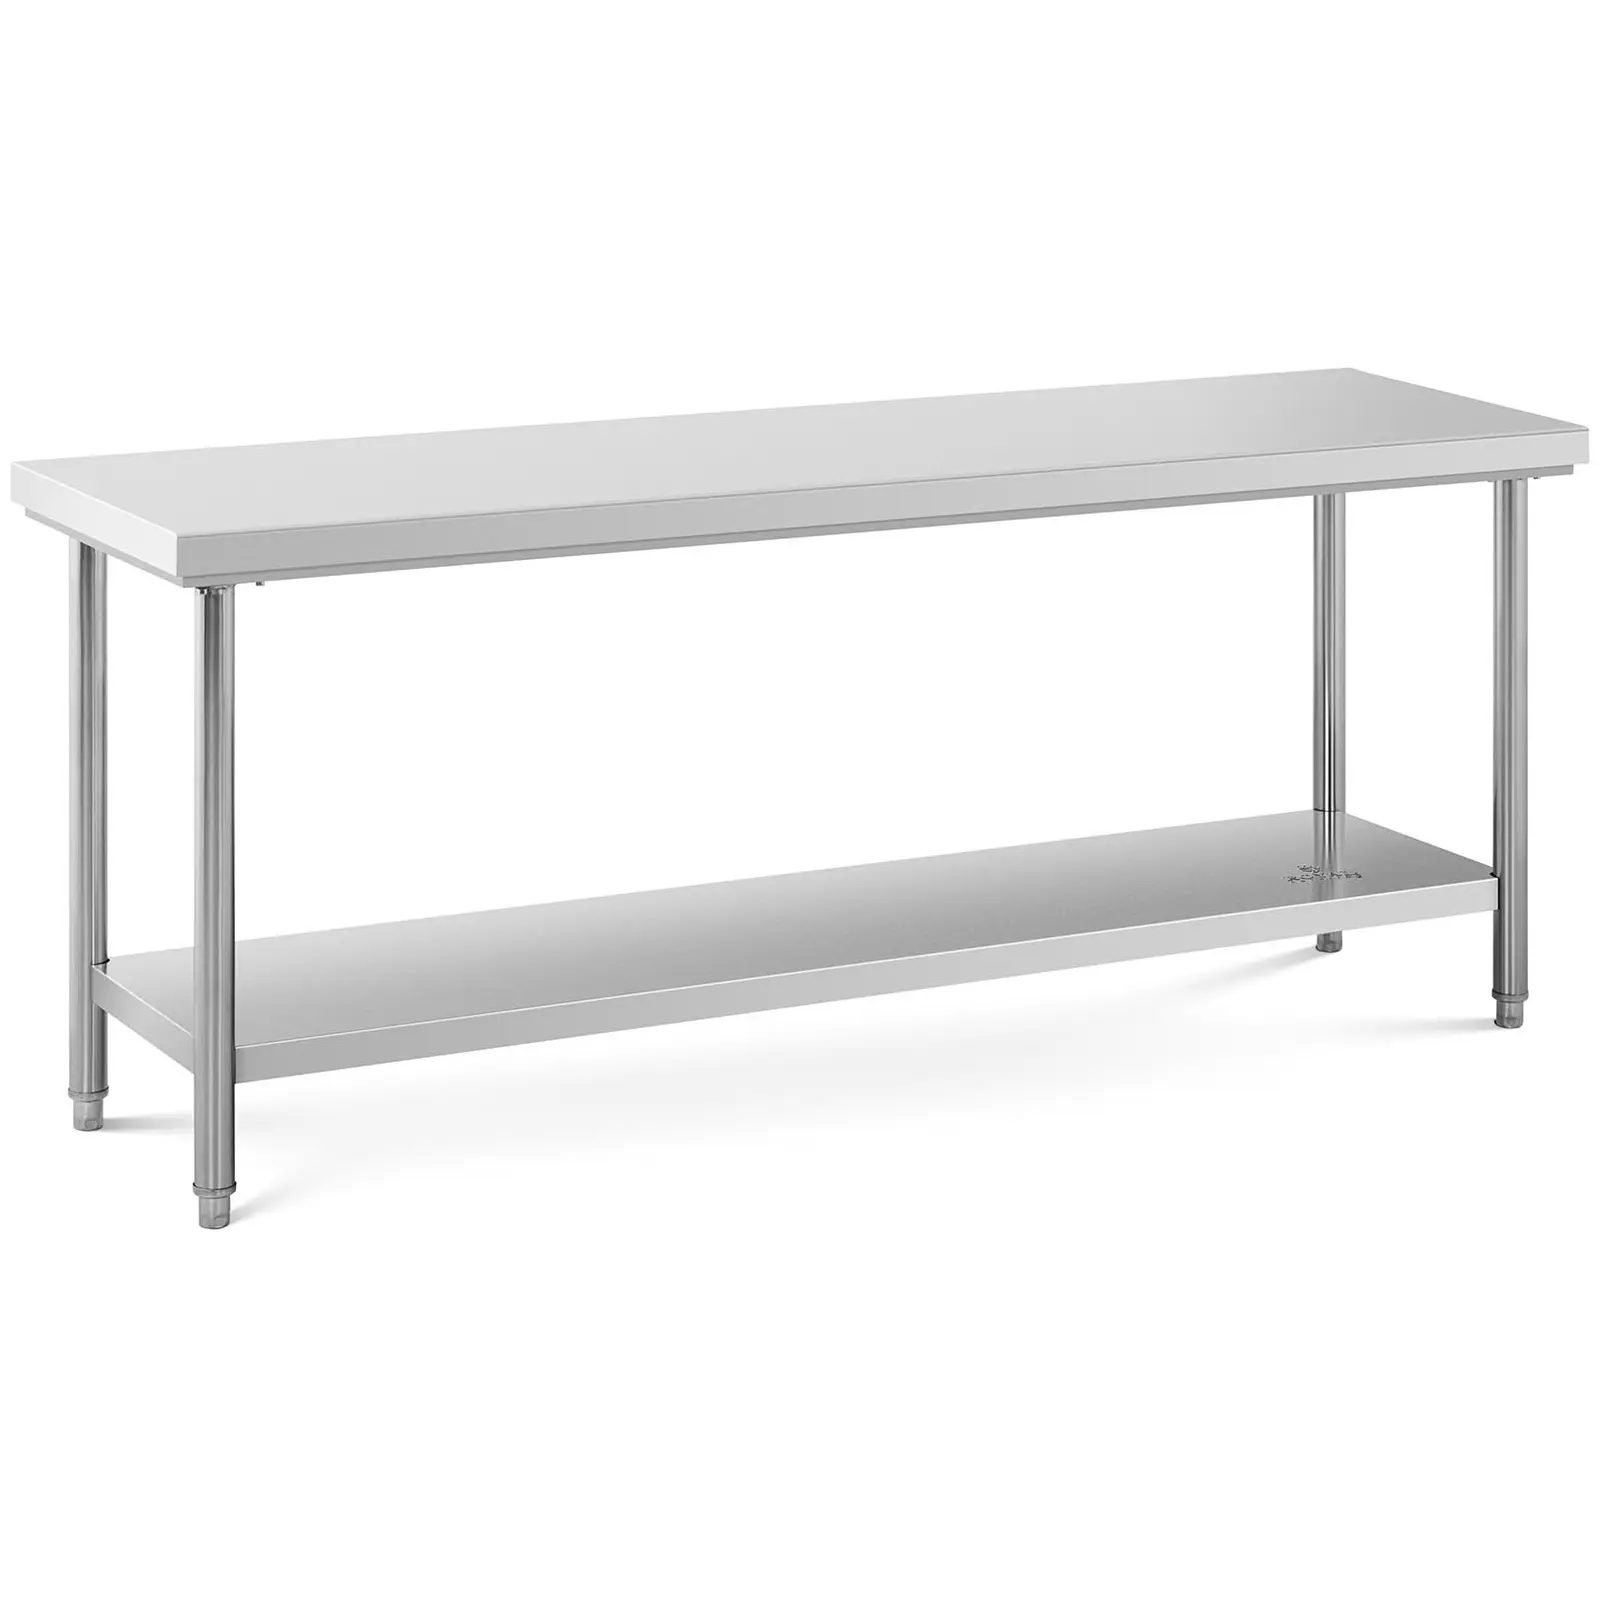 Werktafel – rvs werktafel - 200 x 60 cm - 195 kg capaciteit